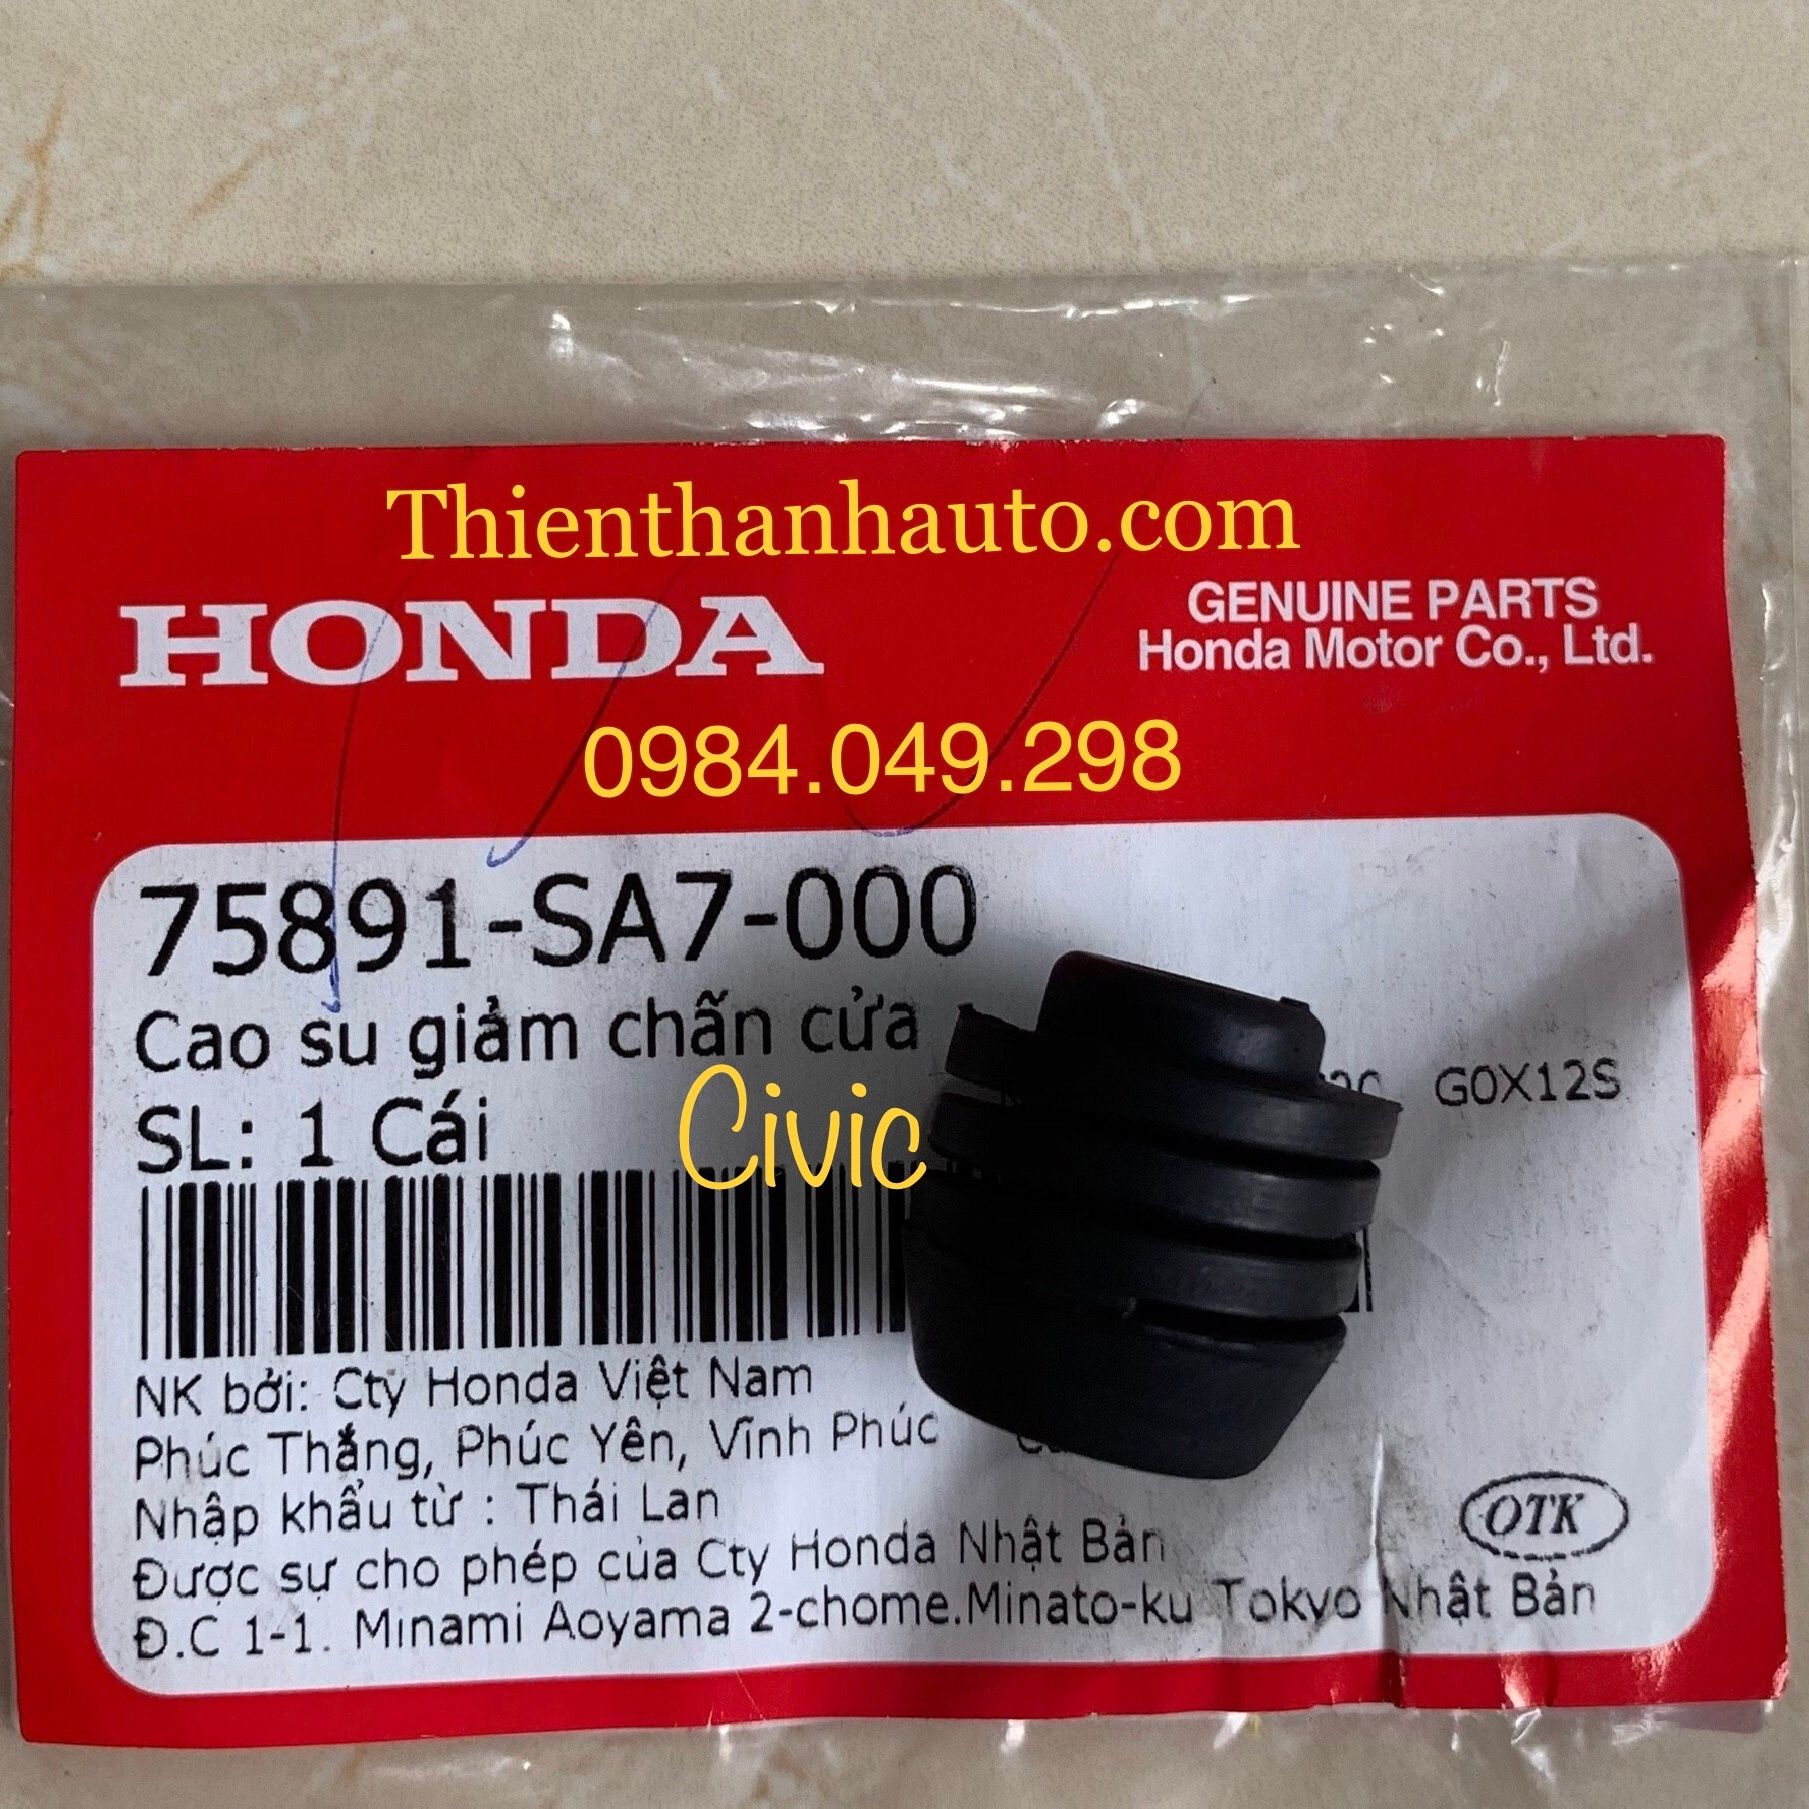 Cao su giảm chấn cánh cửa Honda Civic chính hãng - 75891SA7000 - Thienthanhauto.com